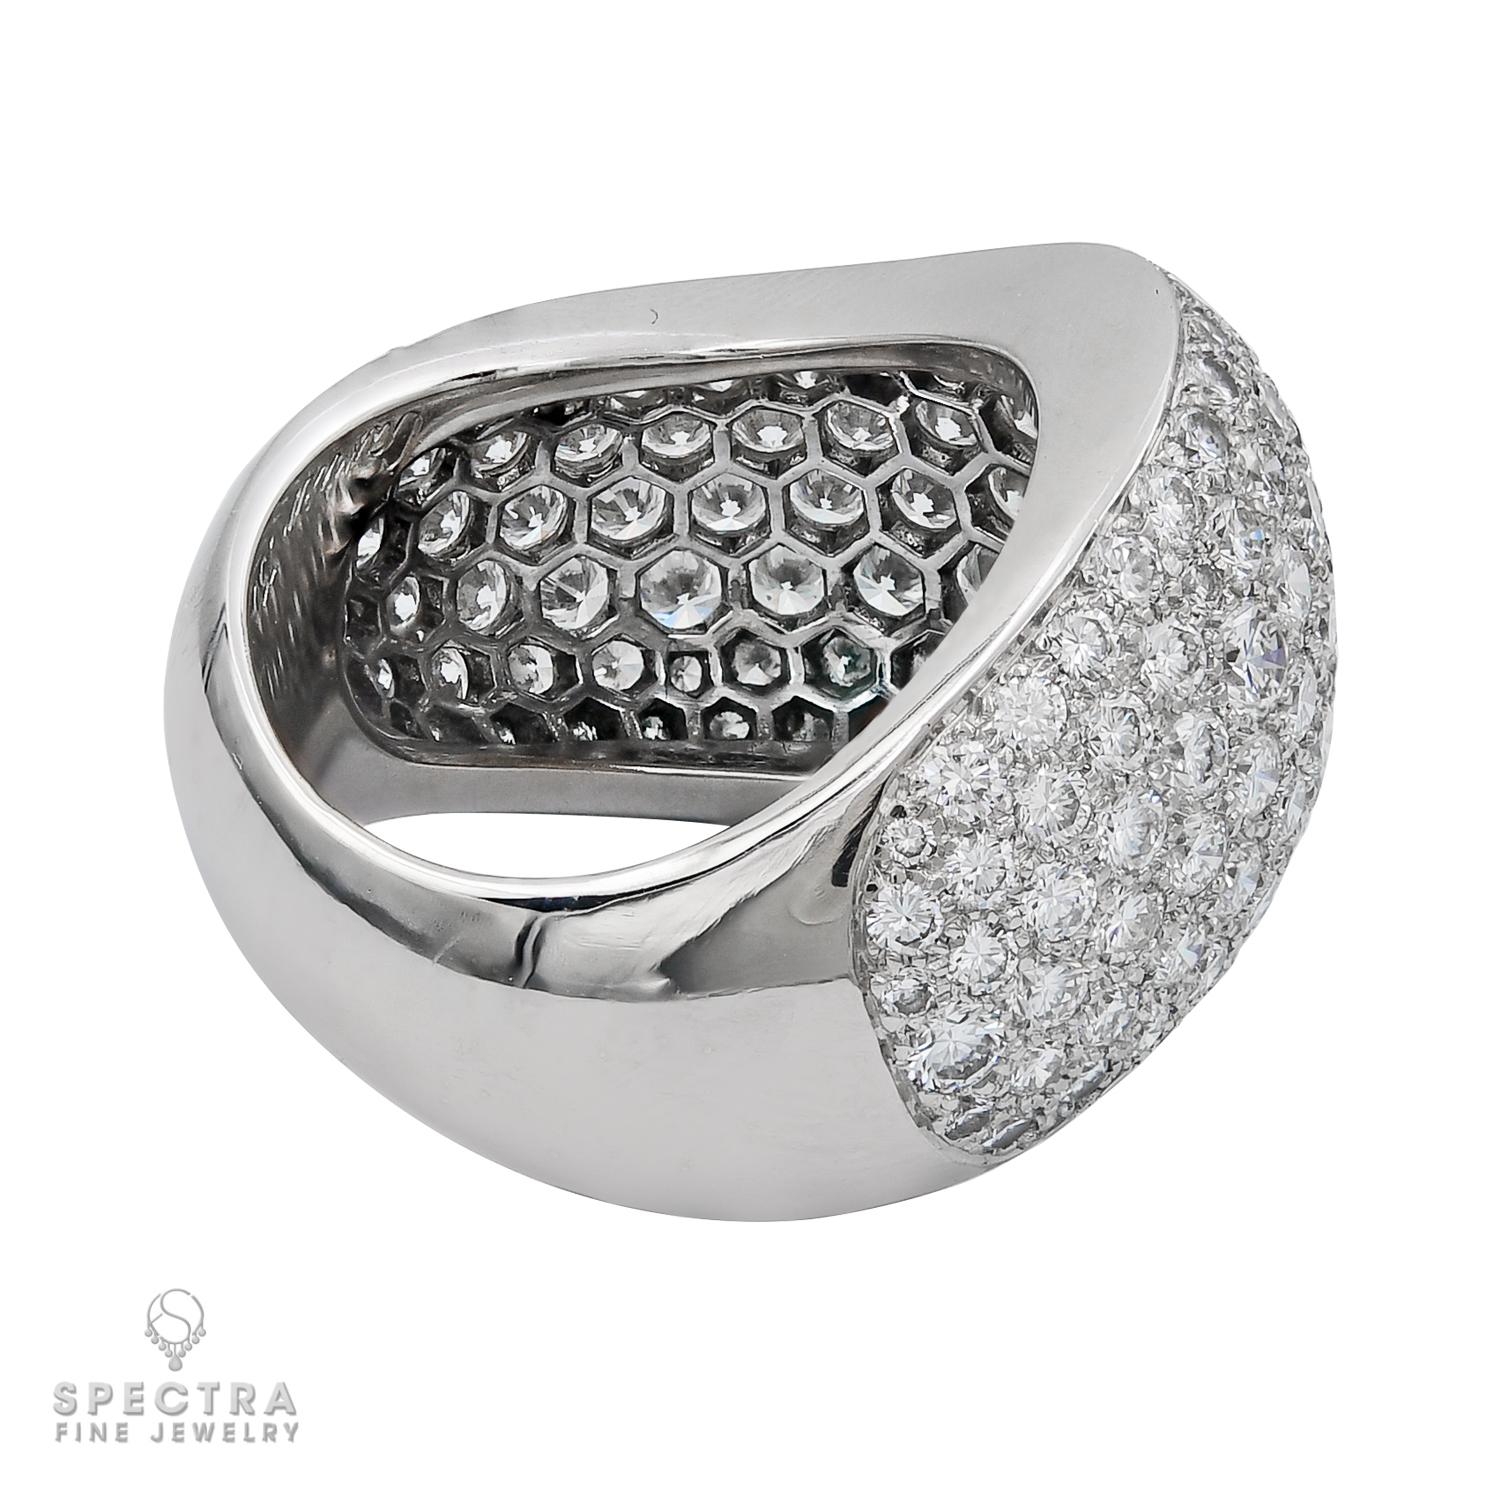 Dieser Cartier Vintage Diamond Bombe Ring verkörpert die ikonische Handwerkskunst der angesehenen französischen Maison Cartier. Sein 